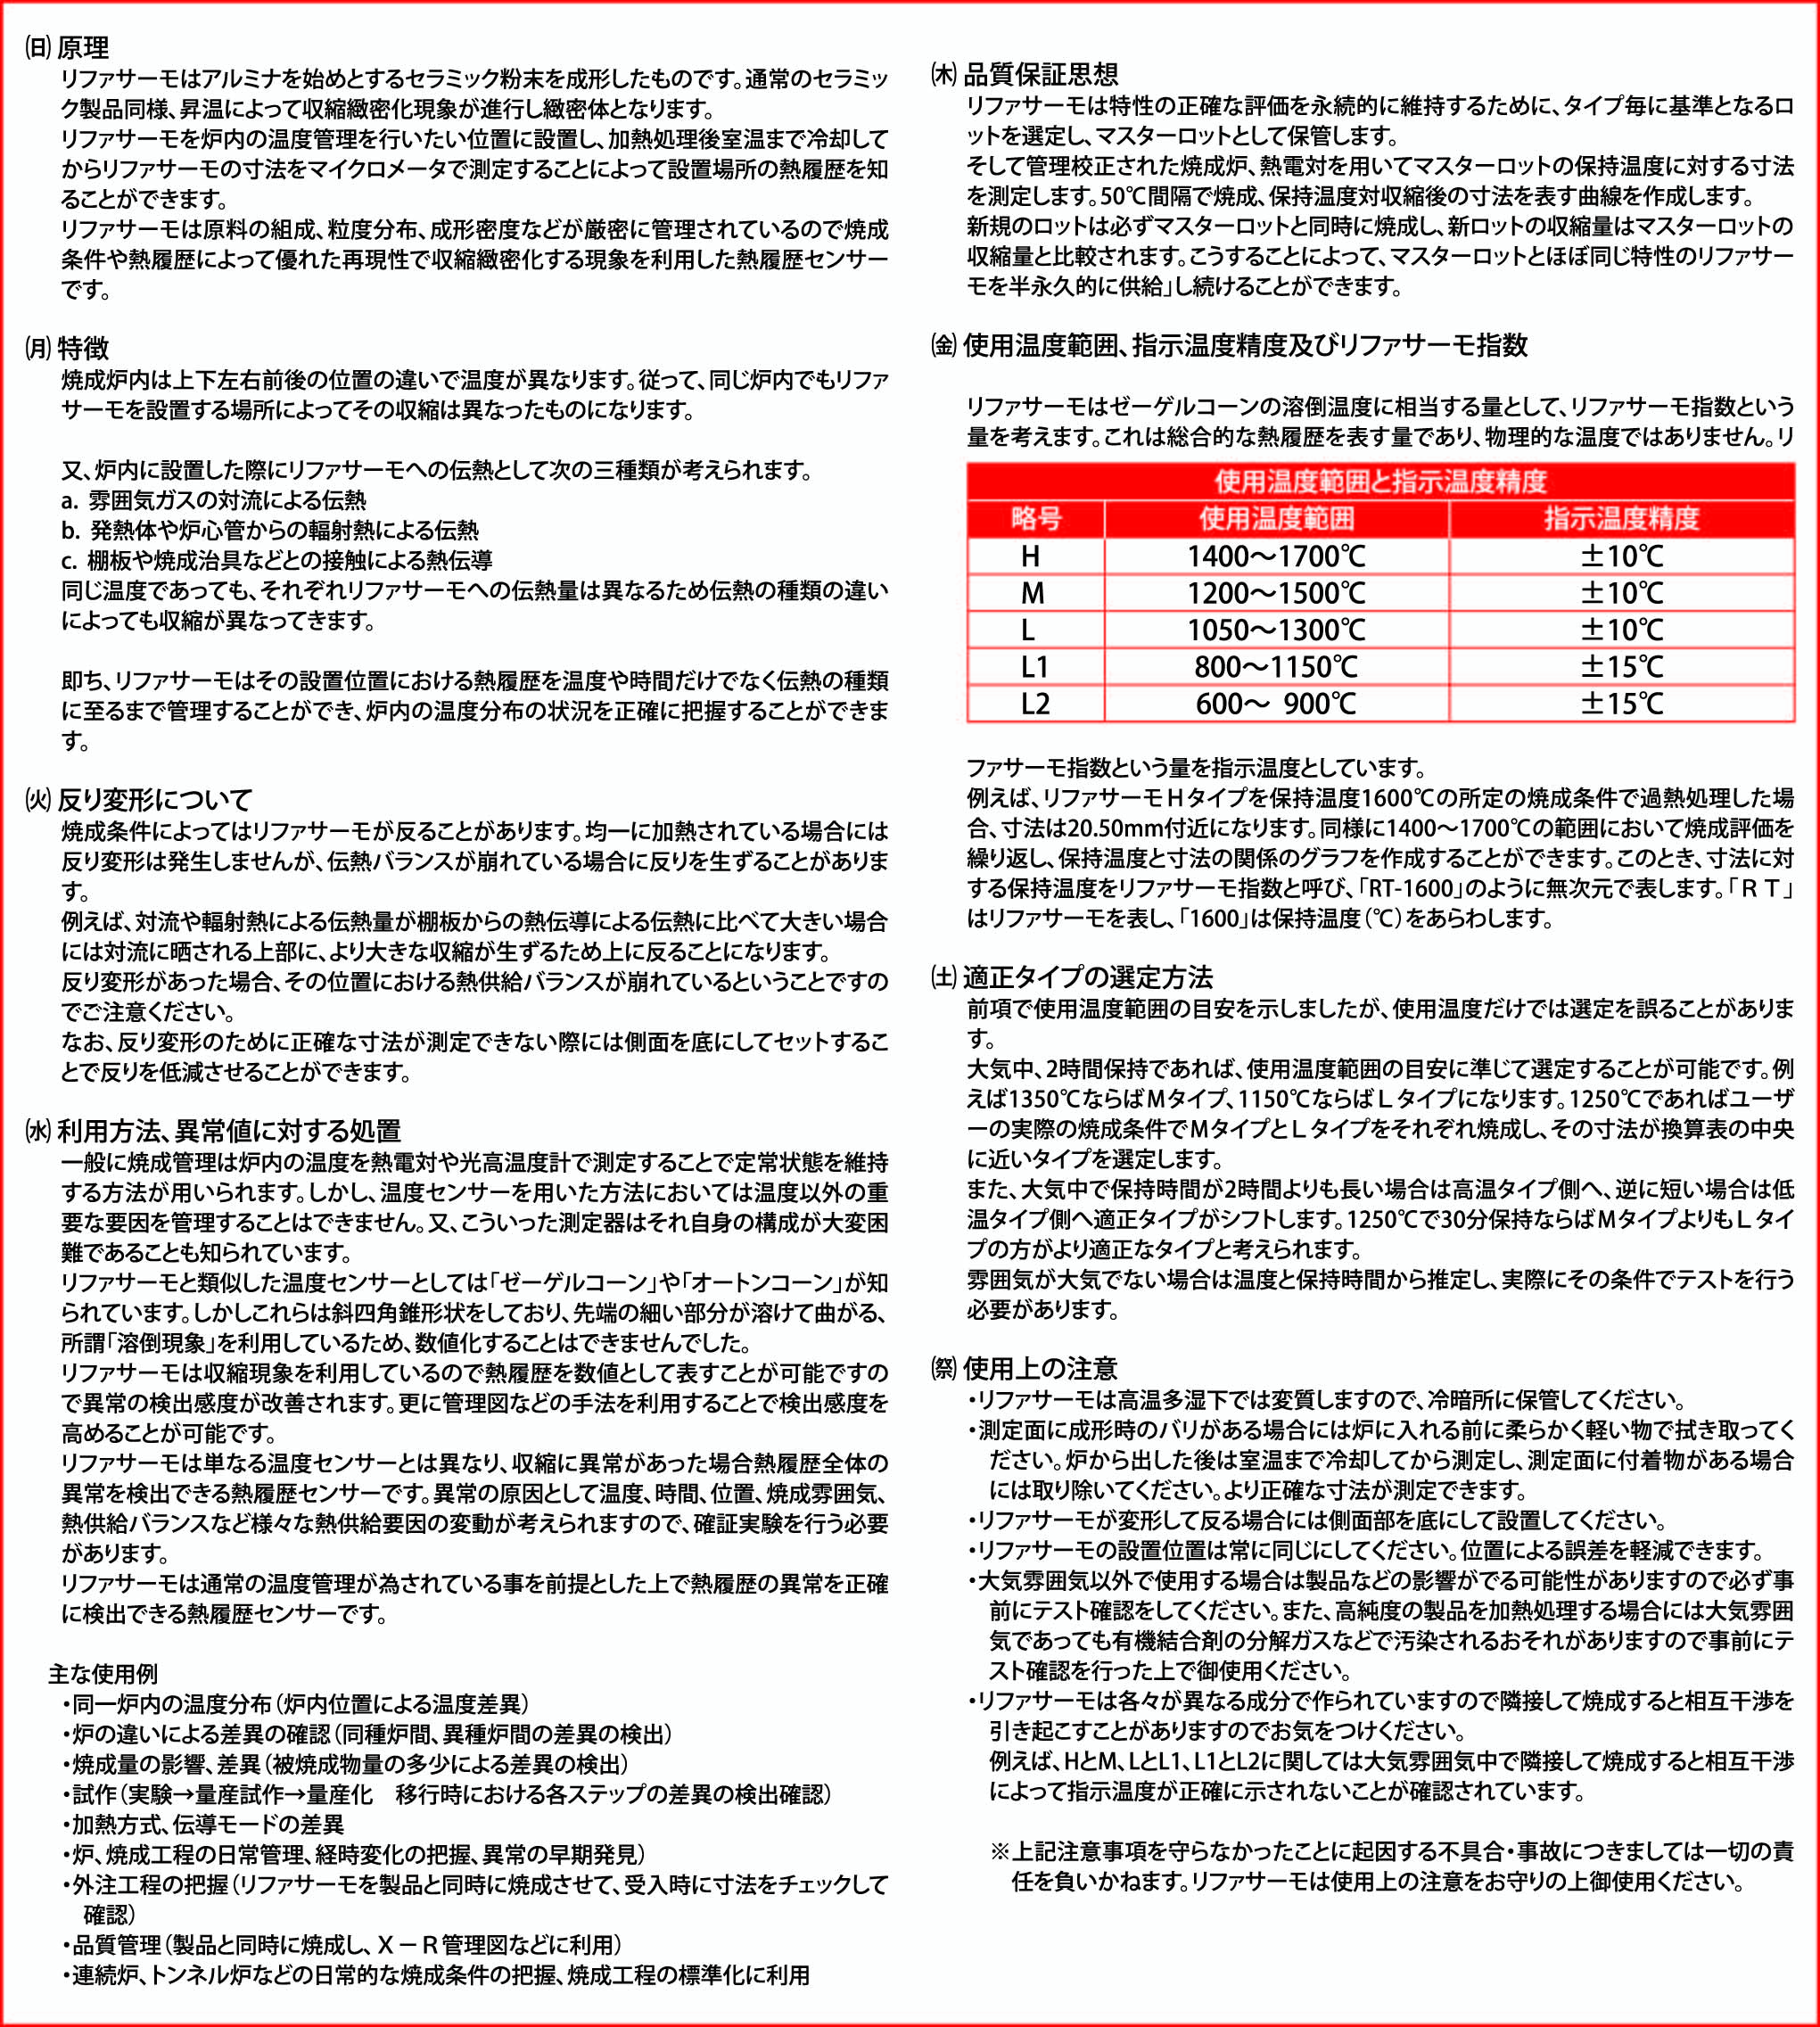 関谷理化(株)| 商品検索サイト / リファサーモ L1